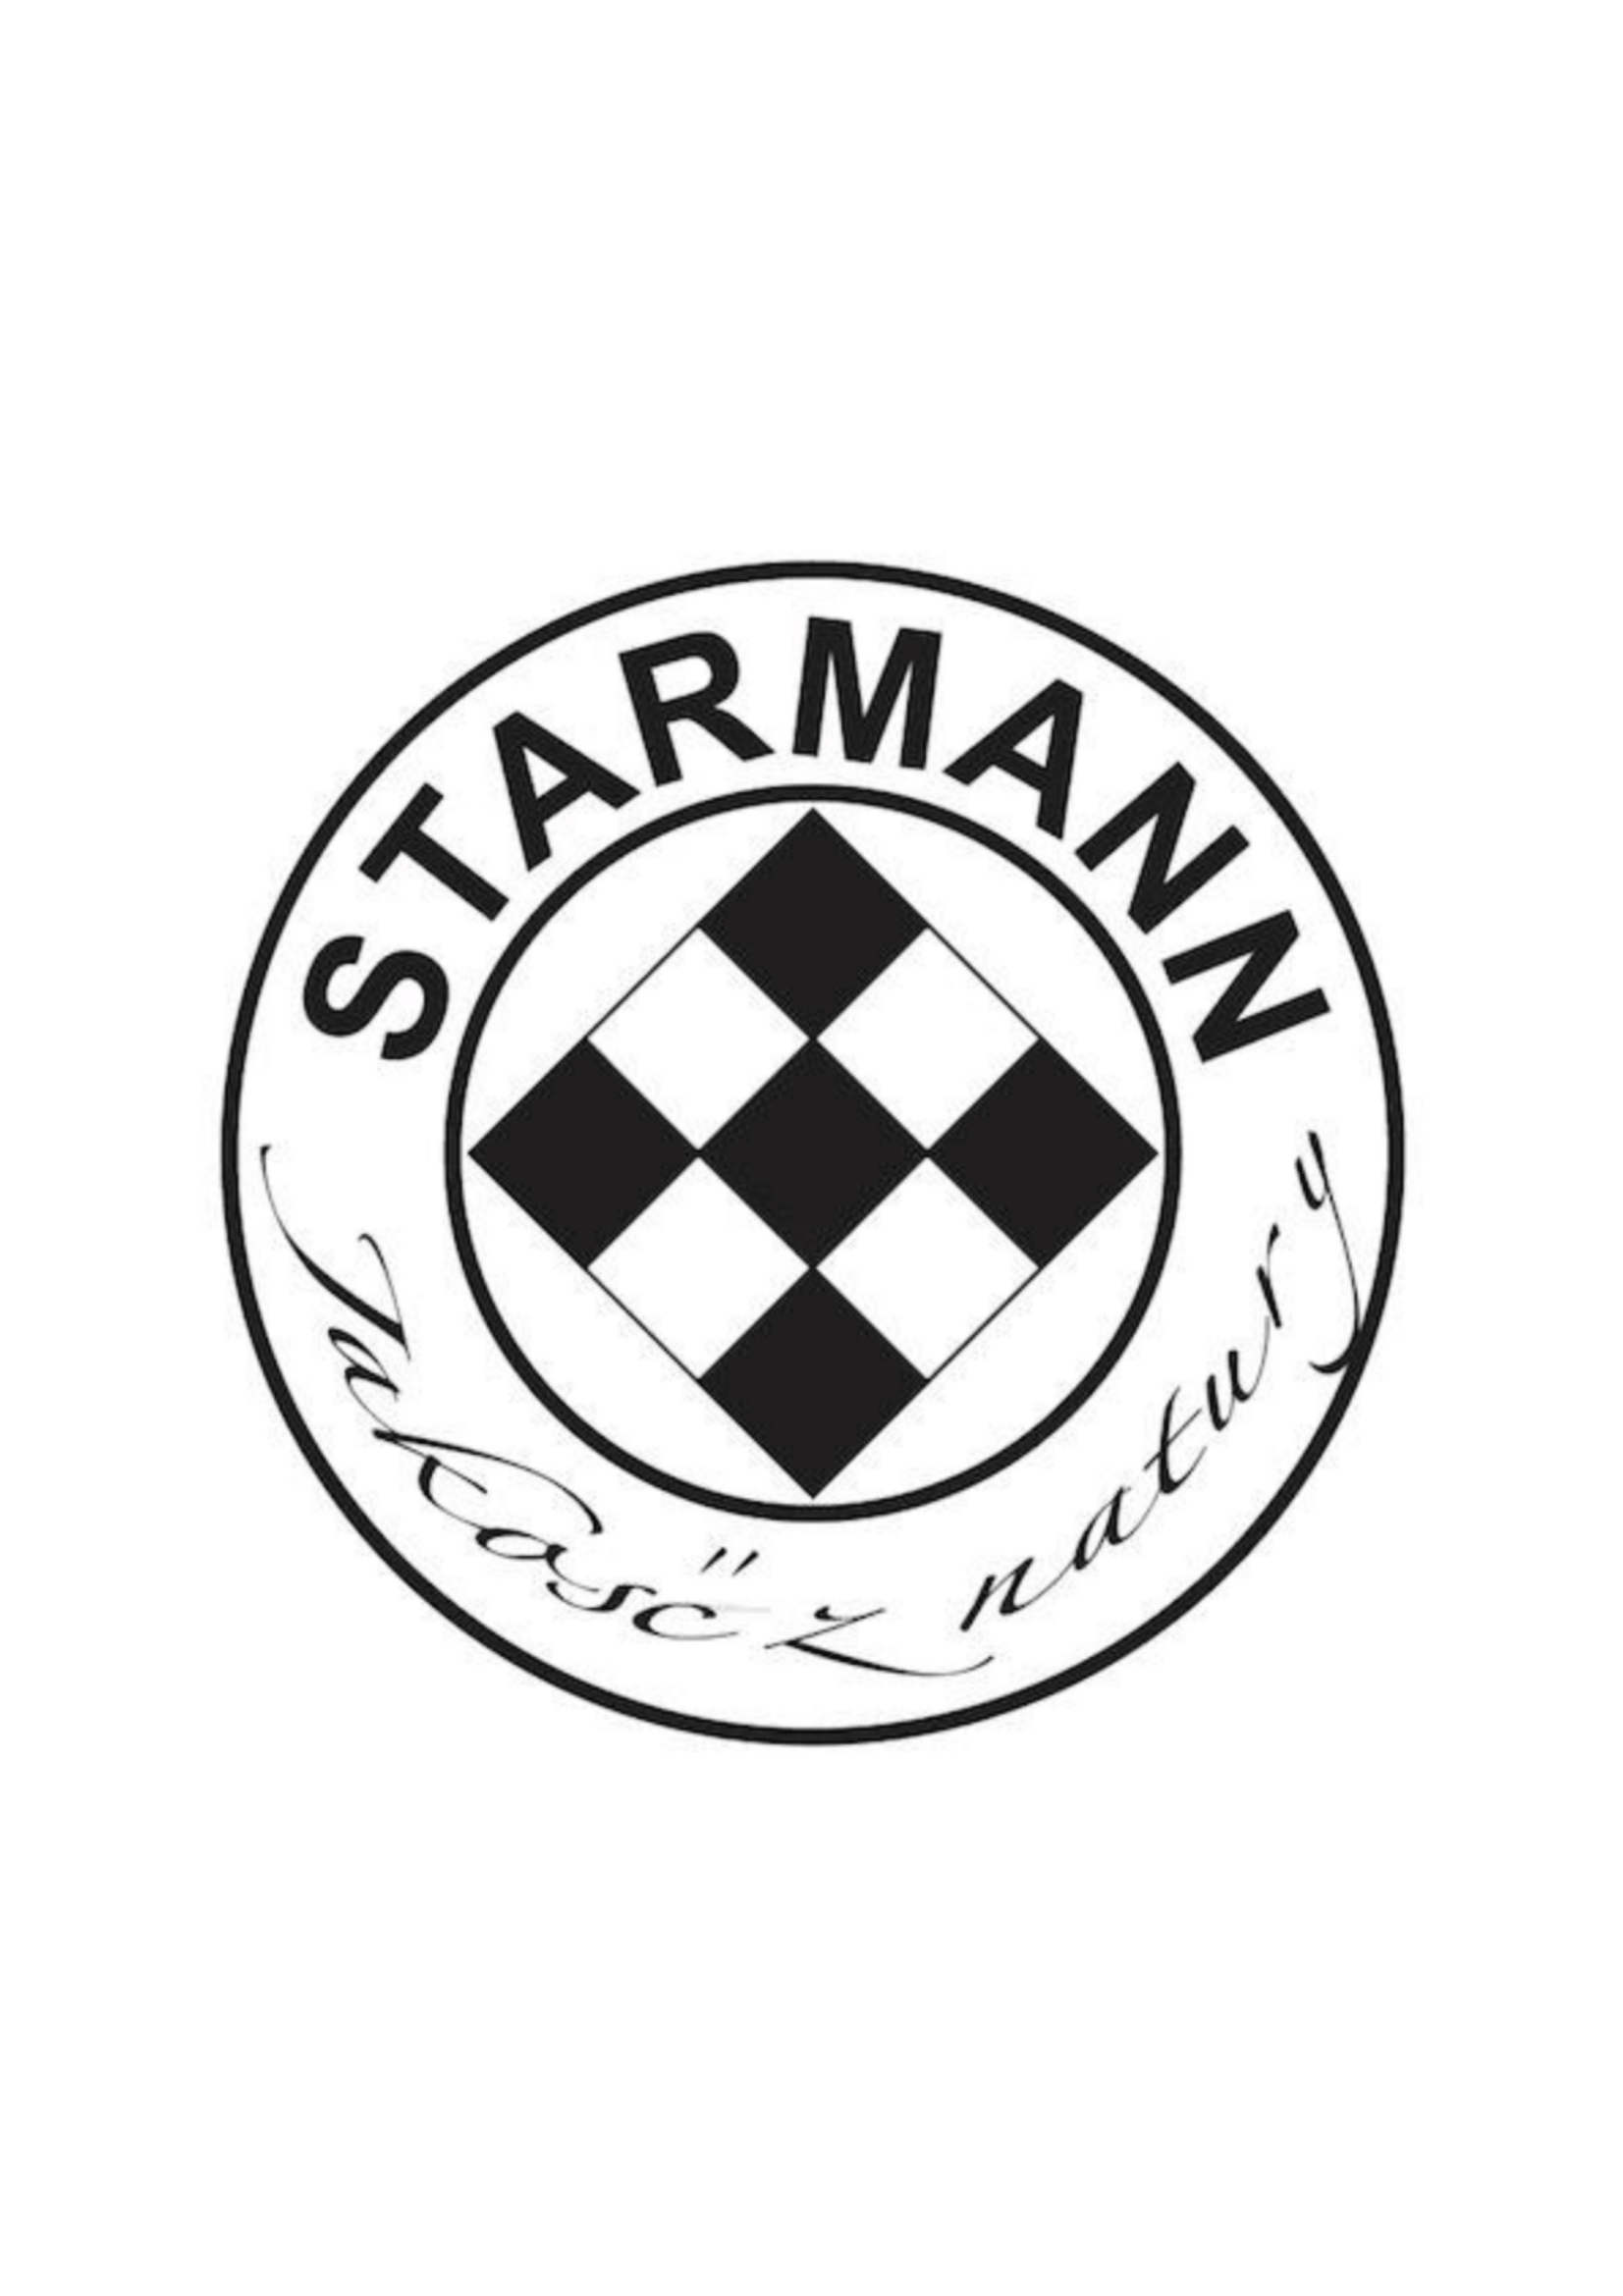 Starmann